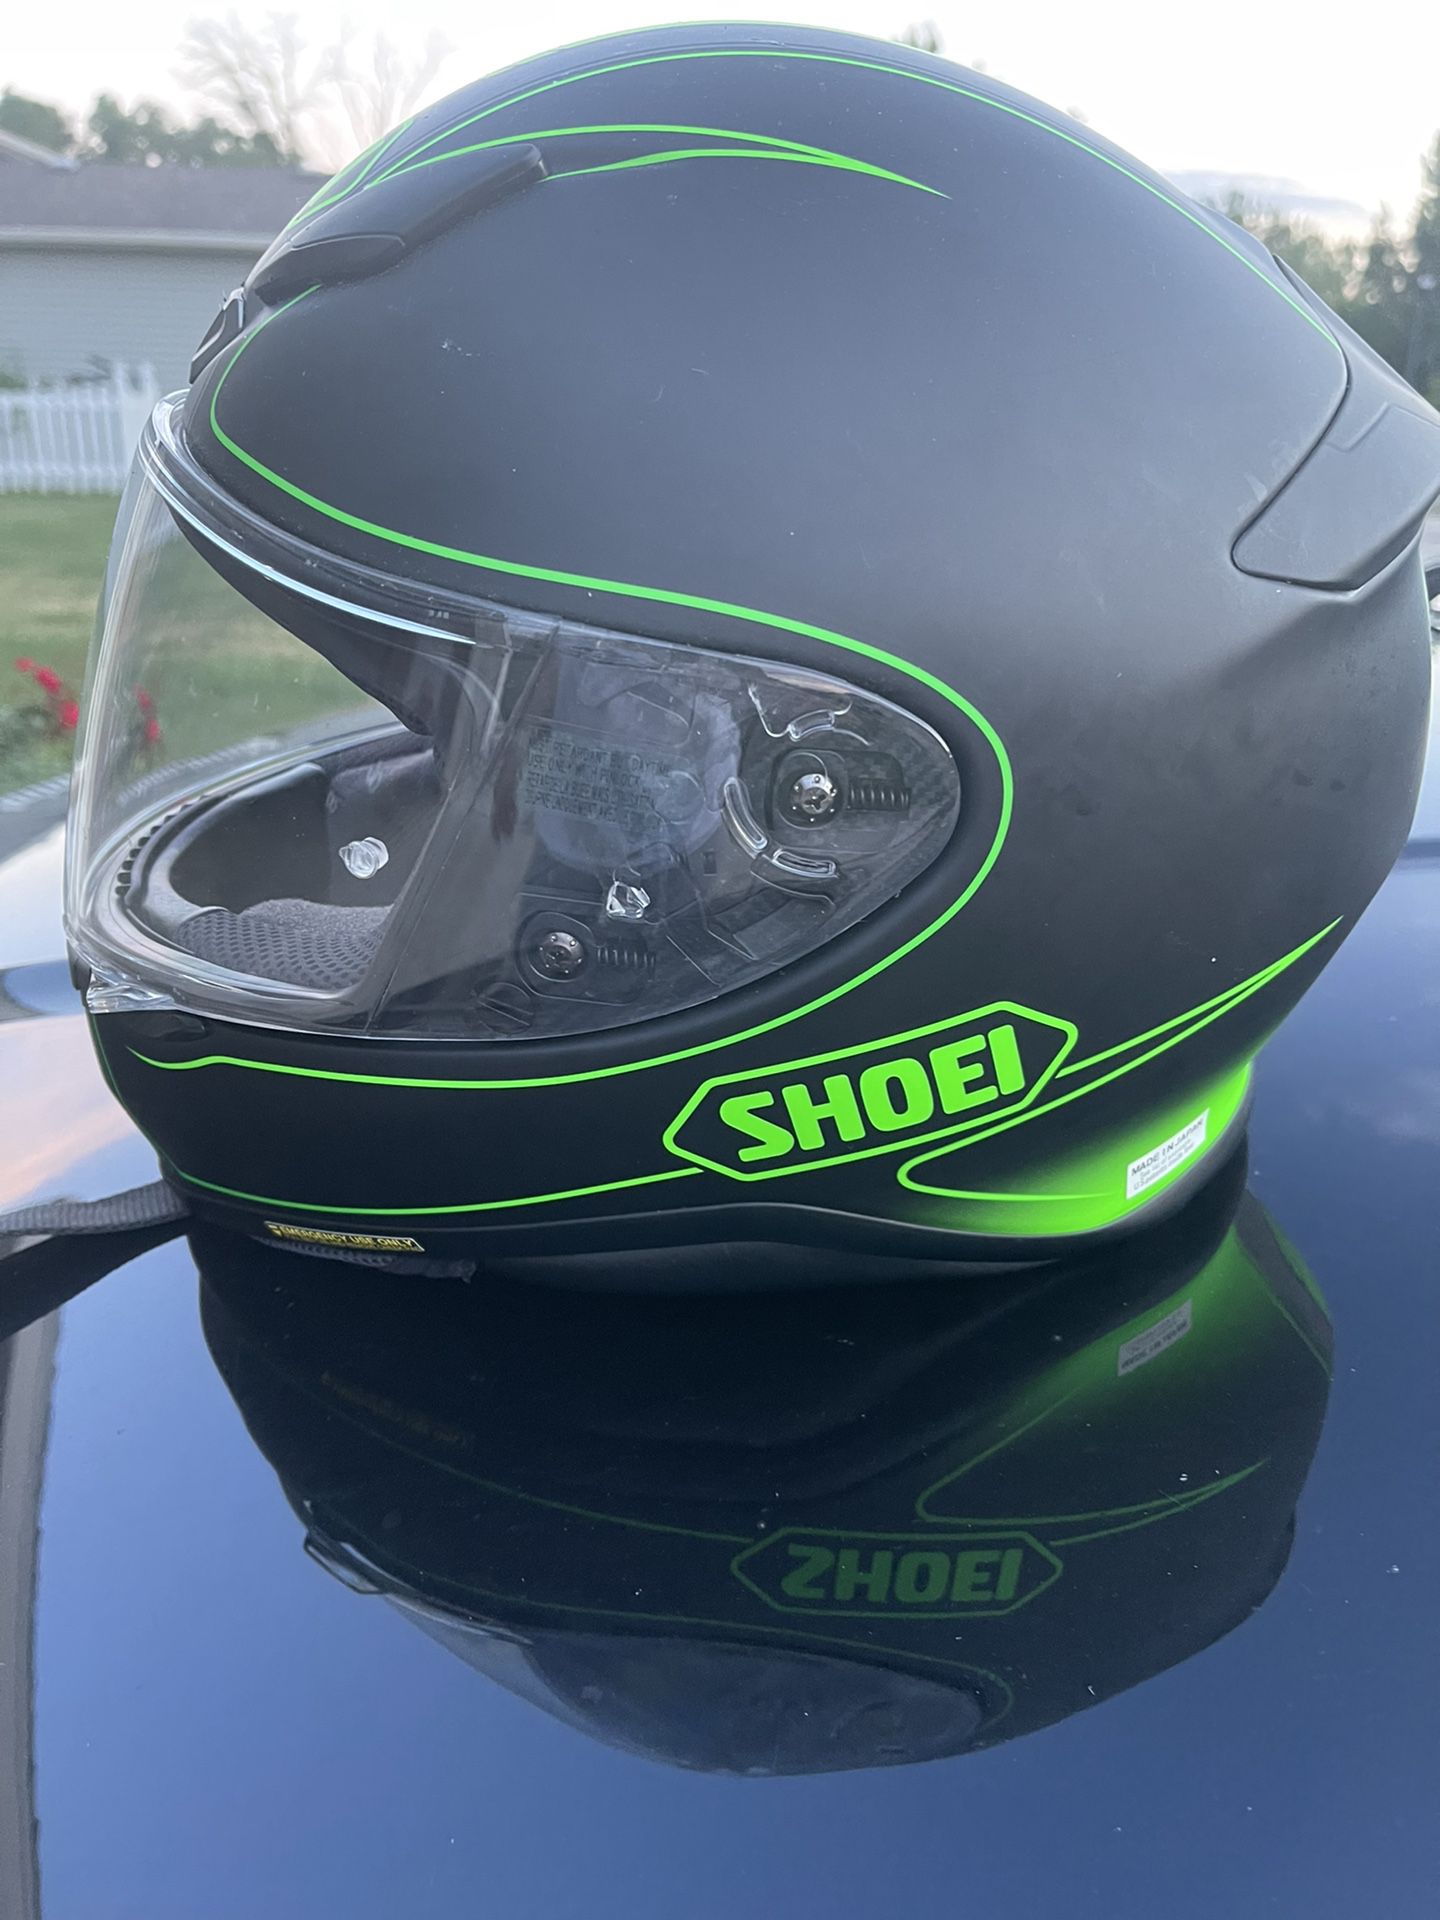 Shoel Motorcycle Helmet